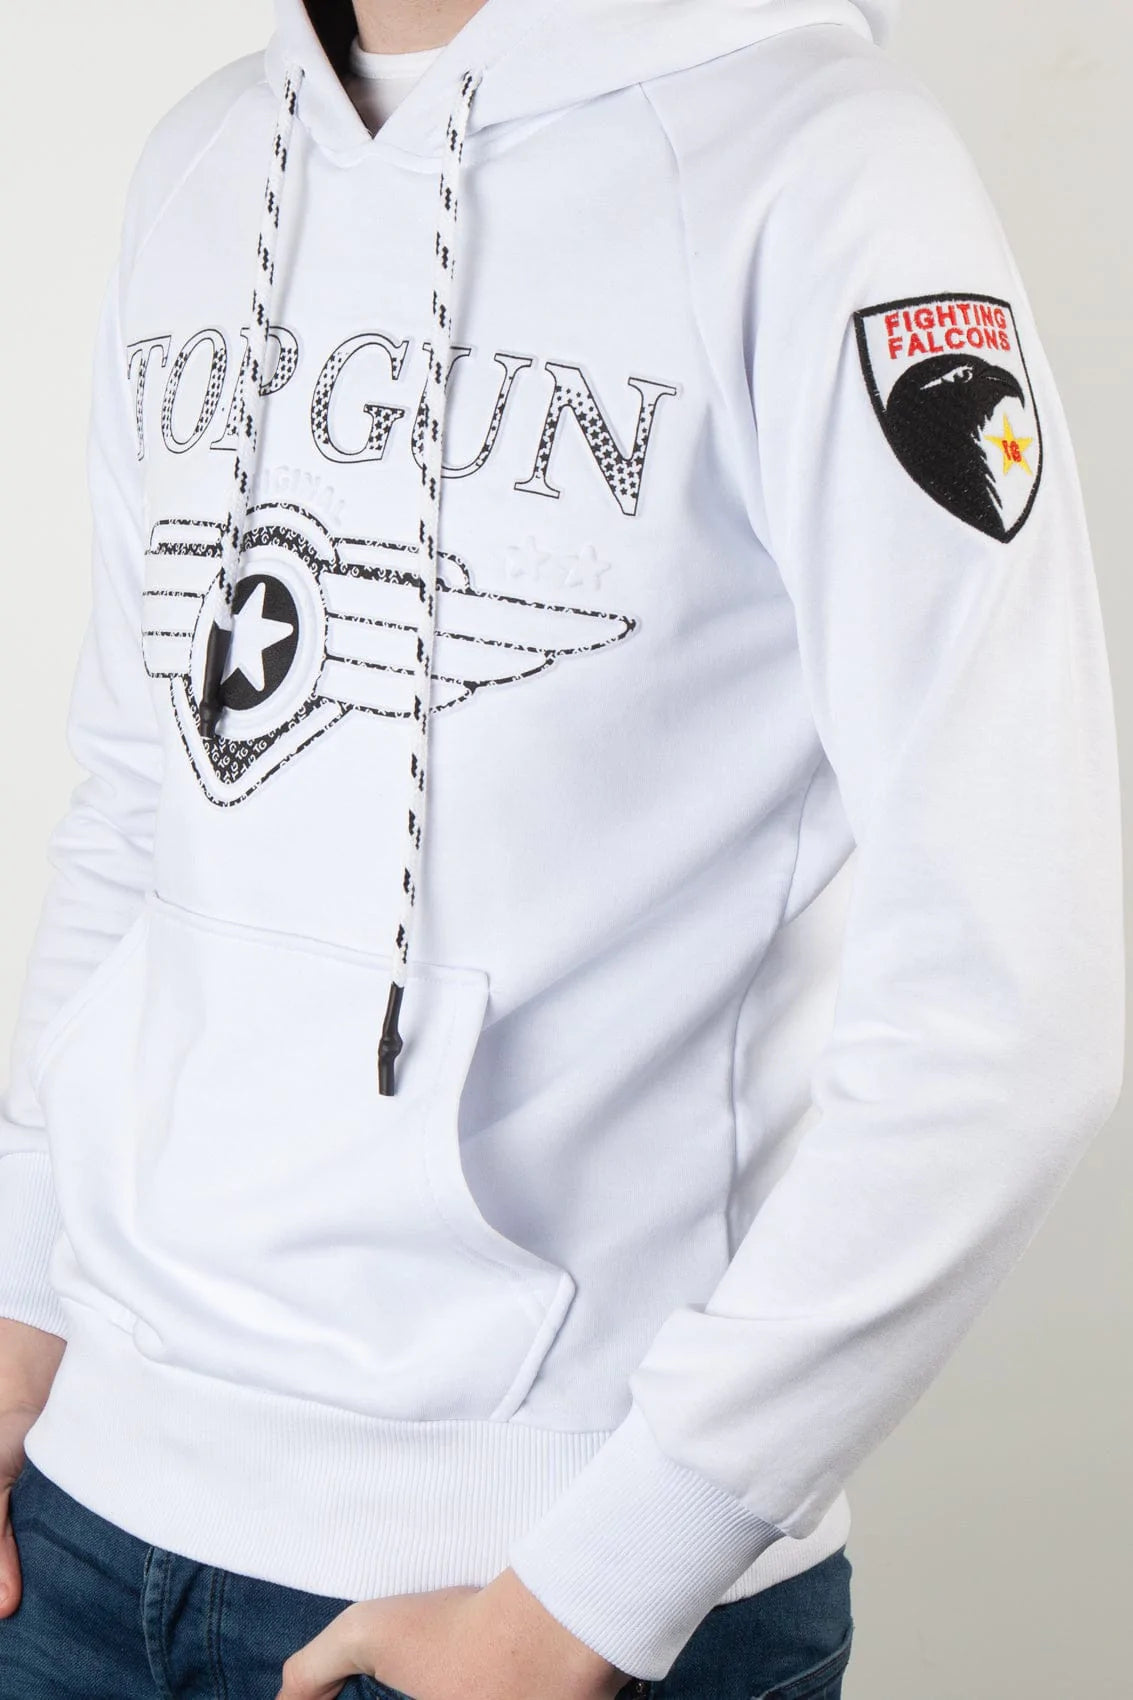 Top GunHoodie sweatshirt "Defend", white